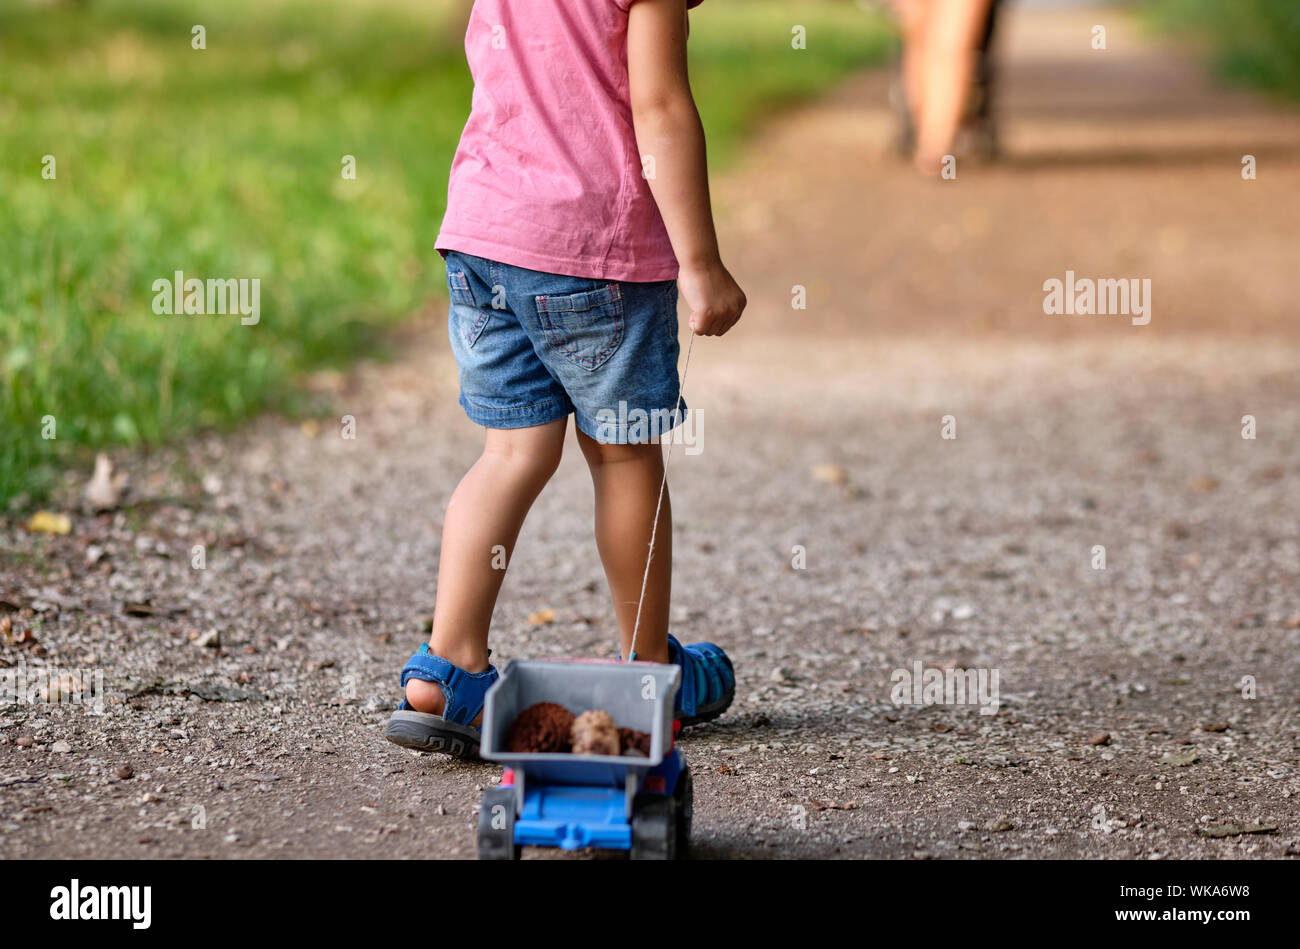 Vista trasera de la sección inferior de 3-4 años de edad en el verano closthing tirando de un camión de juguete con conos en ella Foto de stock